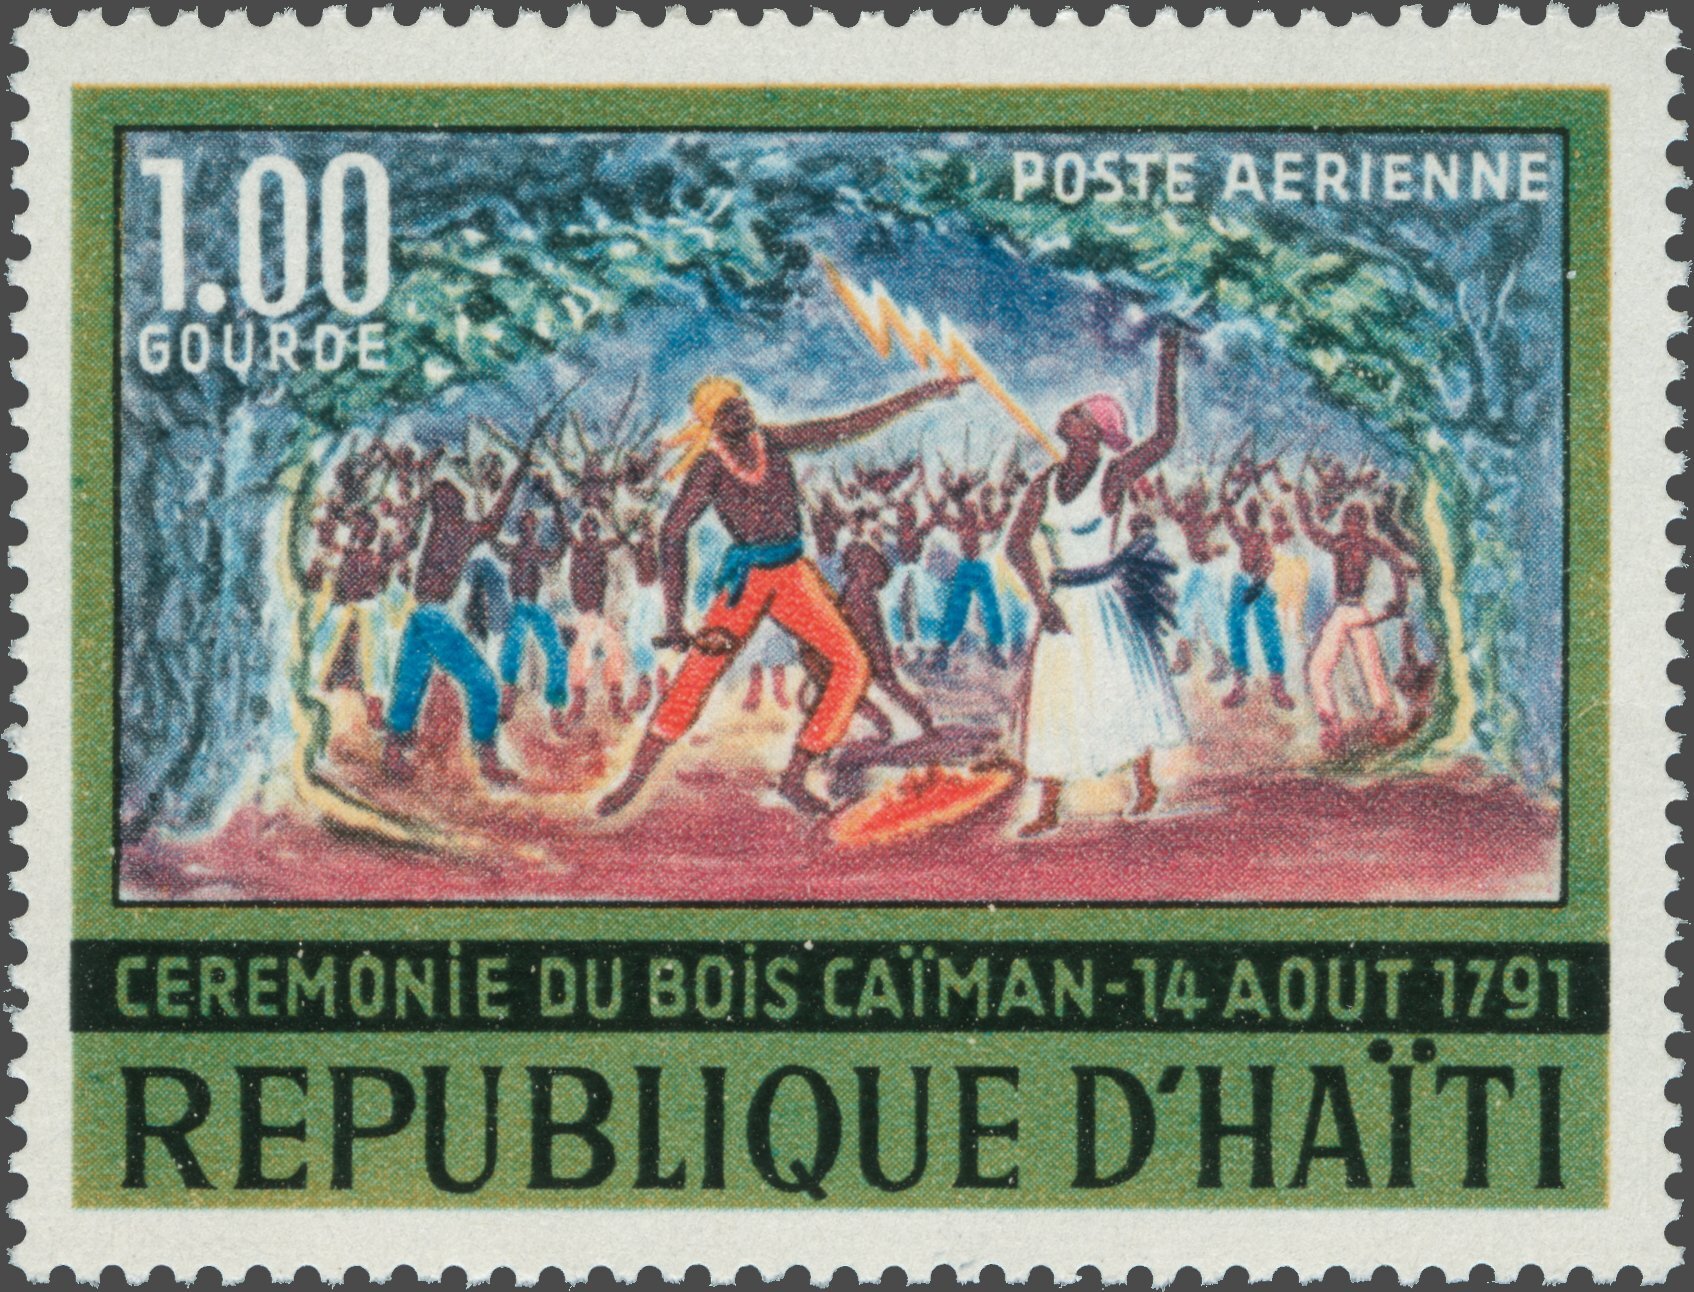 1968 Stamp, Cérémonie du Bois Caïman - 14 Août 1791, Sc C292 / YTPA366 © Haiti Philatelic Society